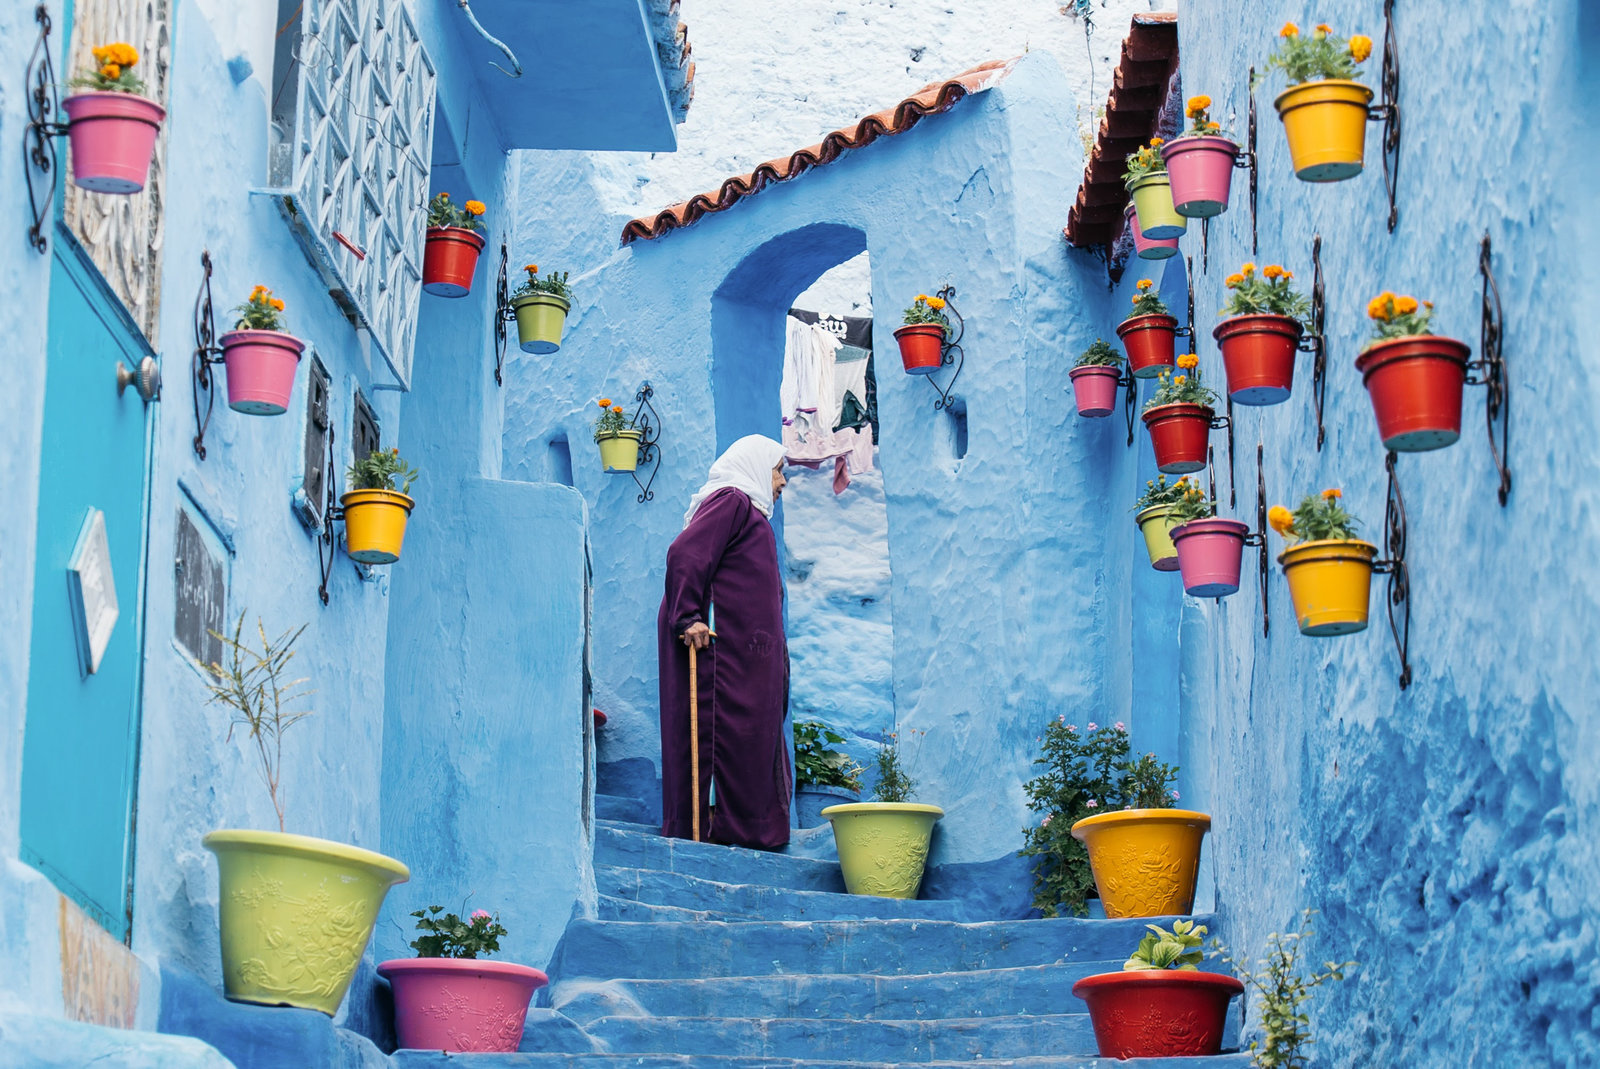 Sasha_Reiko_Photography_Travel_Morocco-101